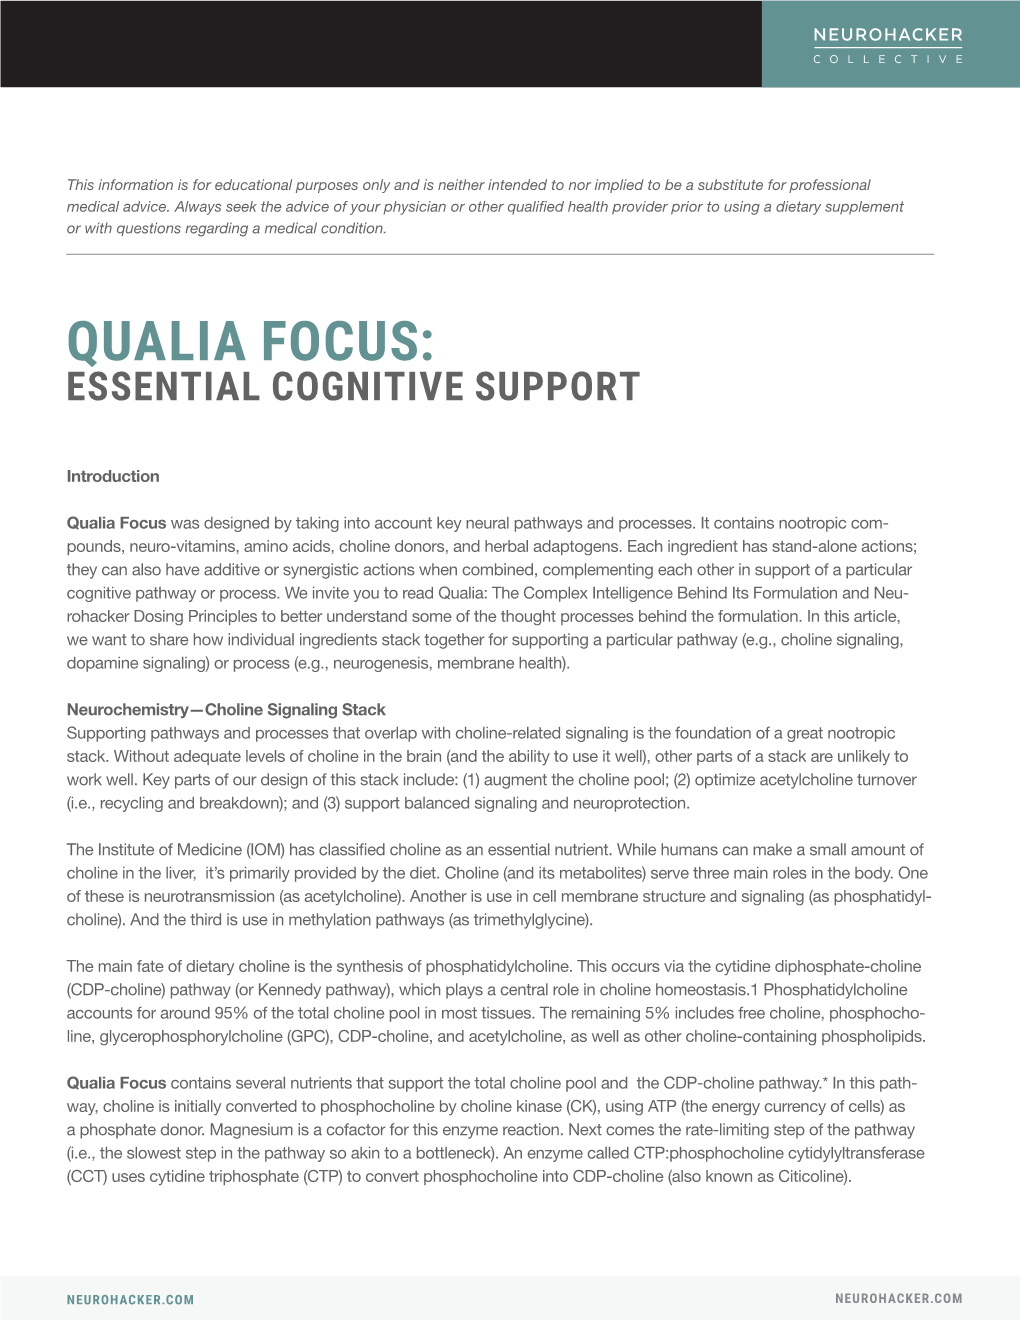 Qualia Focus: Essential Cognitive Support